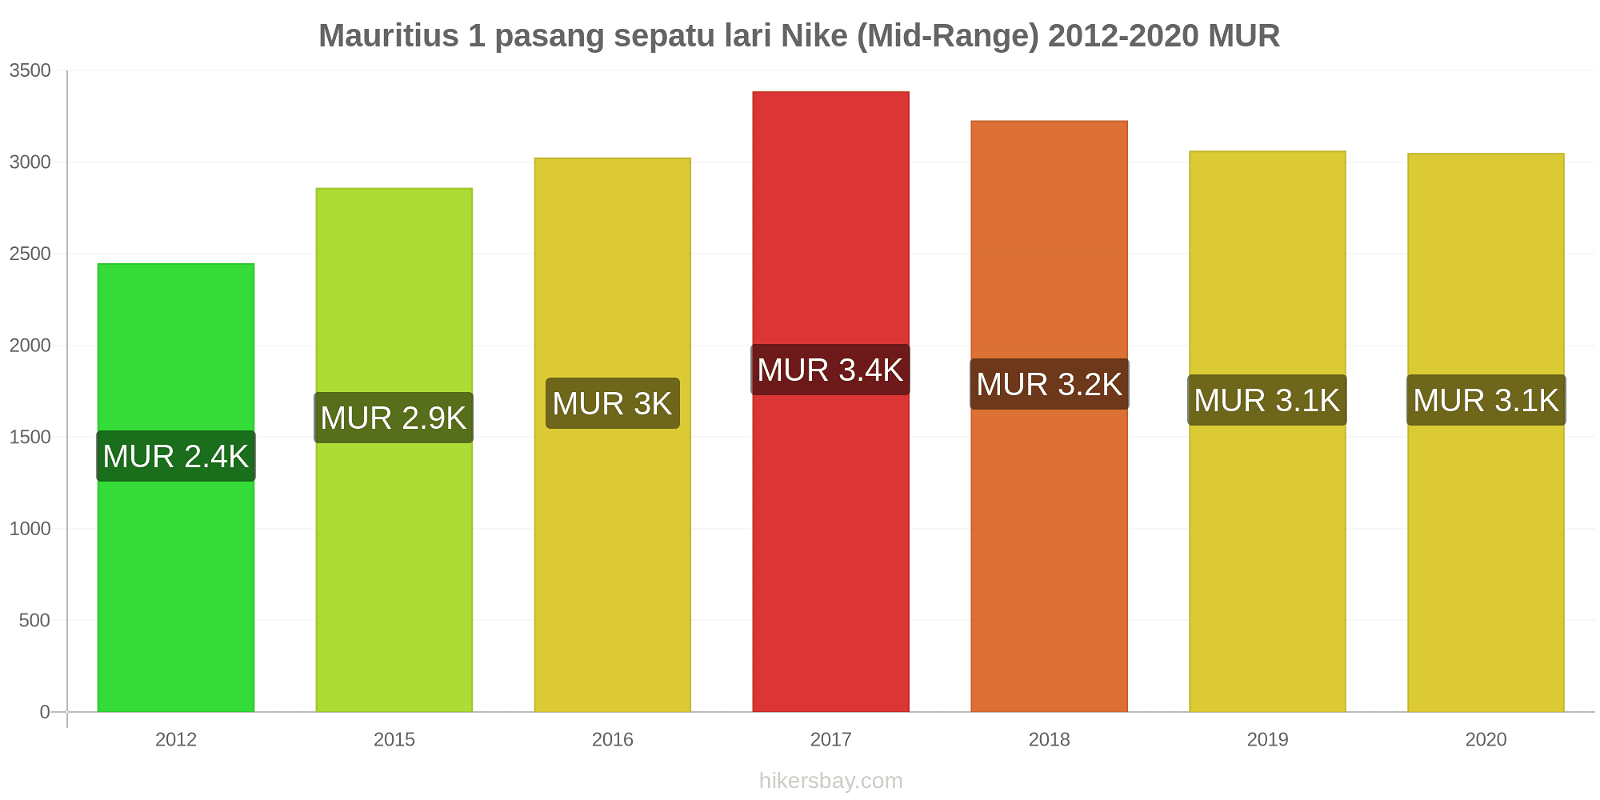 Mauritius perubahan harga 1 pasang sepatu lari Nike (Mid-Range) hikersbay.com